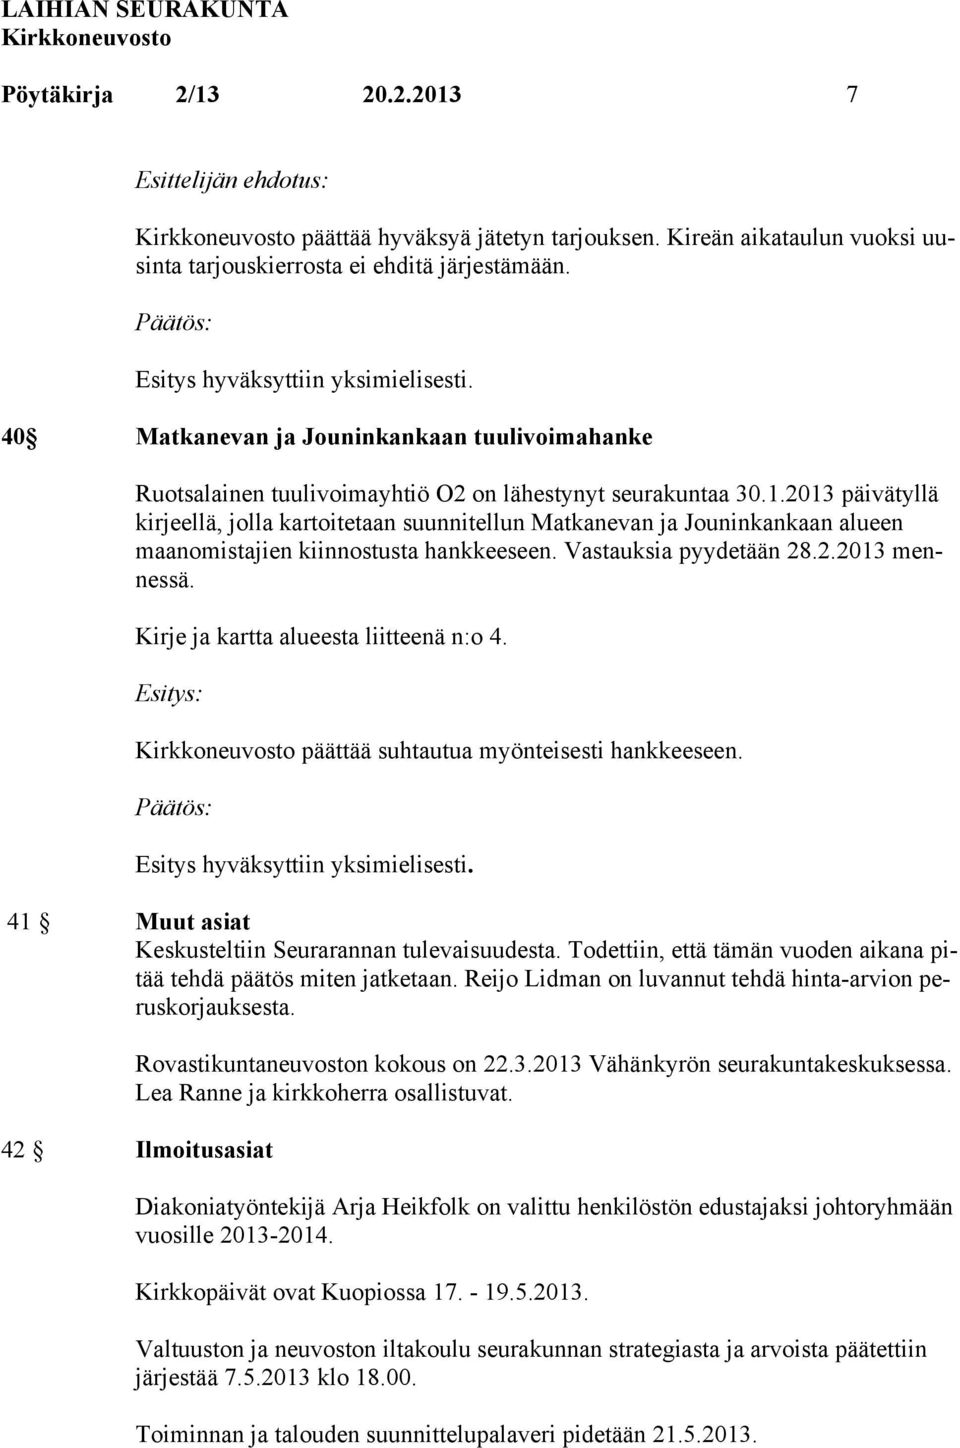 2013 päivätyllä kirjeellä, jolla kartoitetaan suunnitellun Matkanevan ja Jouninkankaan alueen maanomistajien kiinnostusta hankkeeseen. Vastauksia pyydetään 28.2.2013 mennessä.